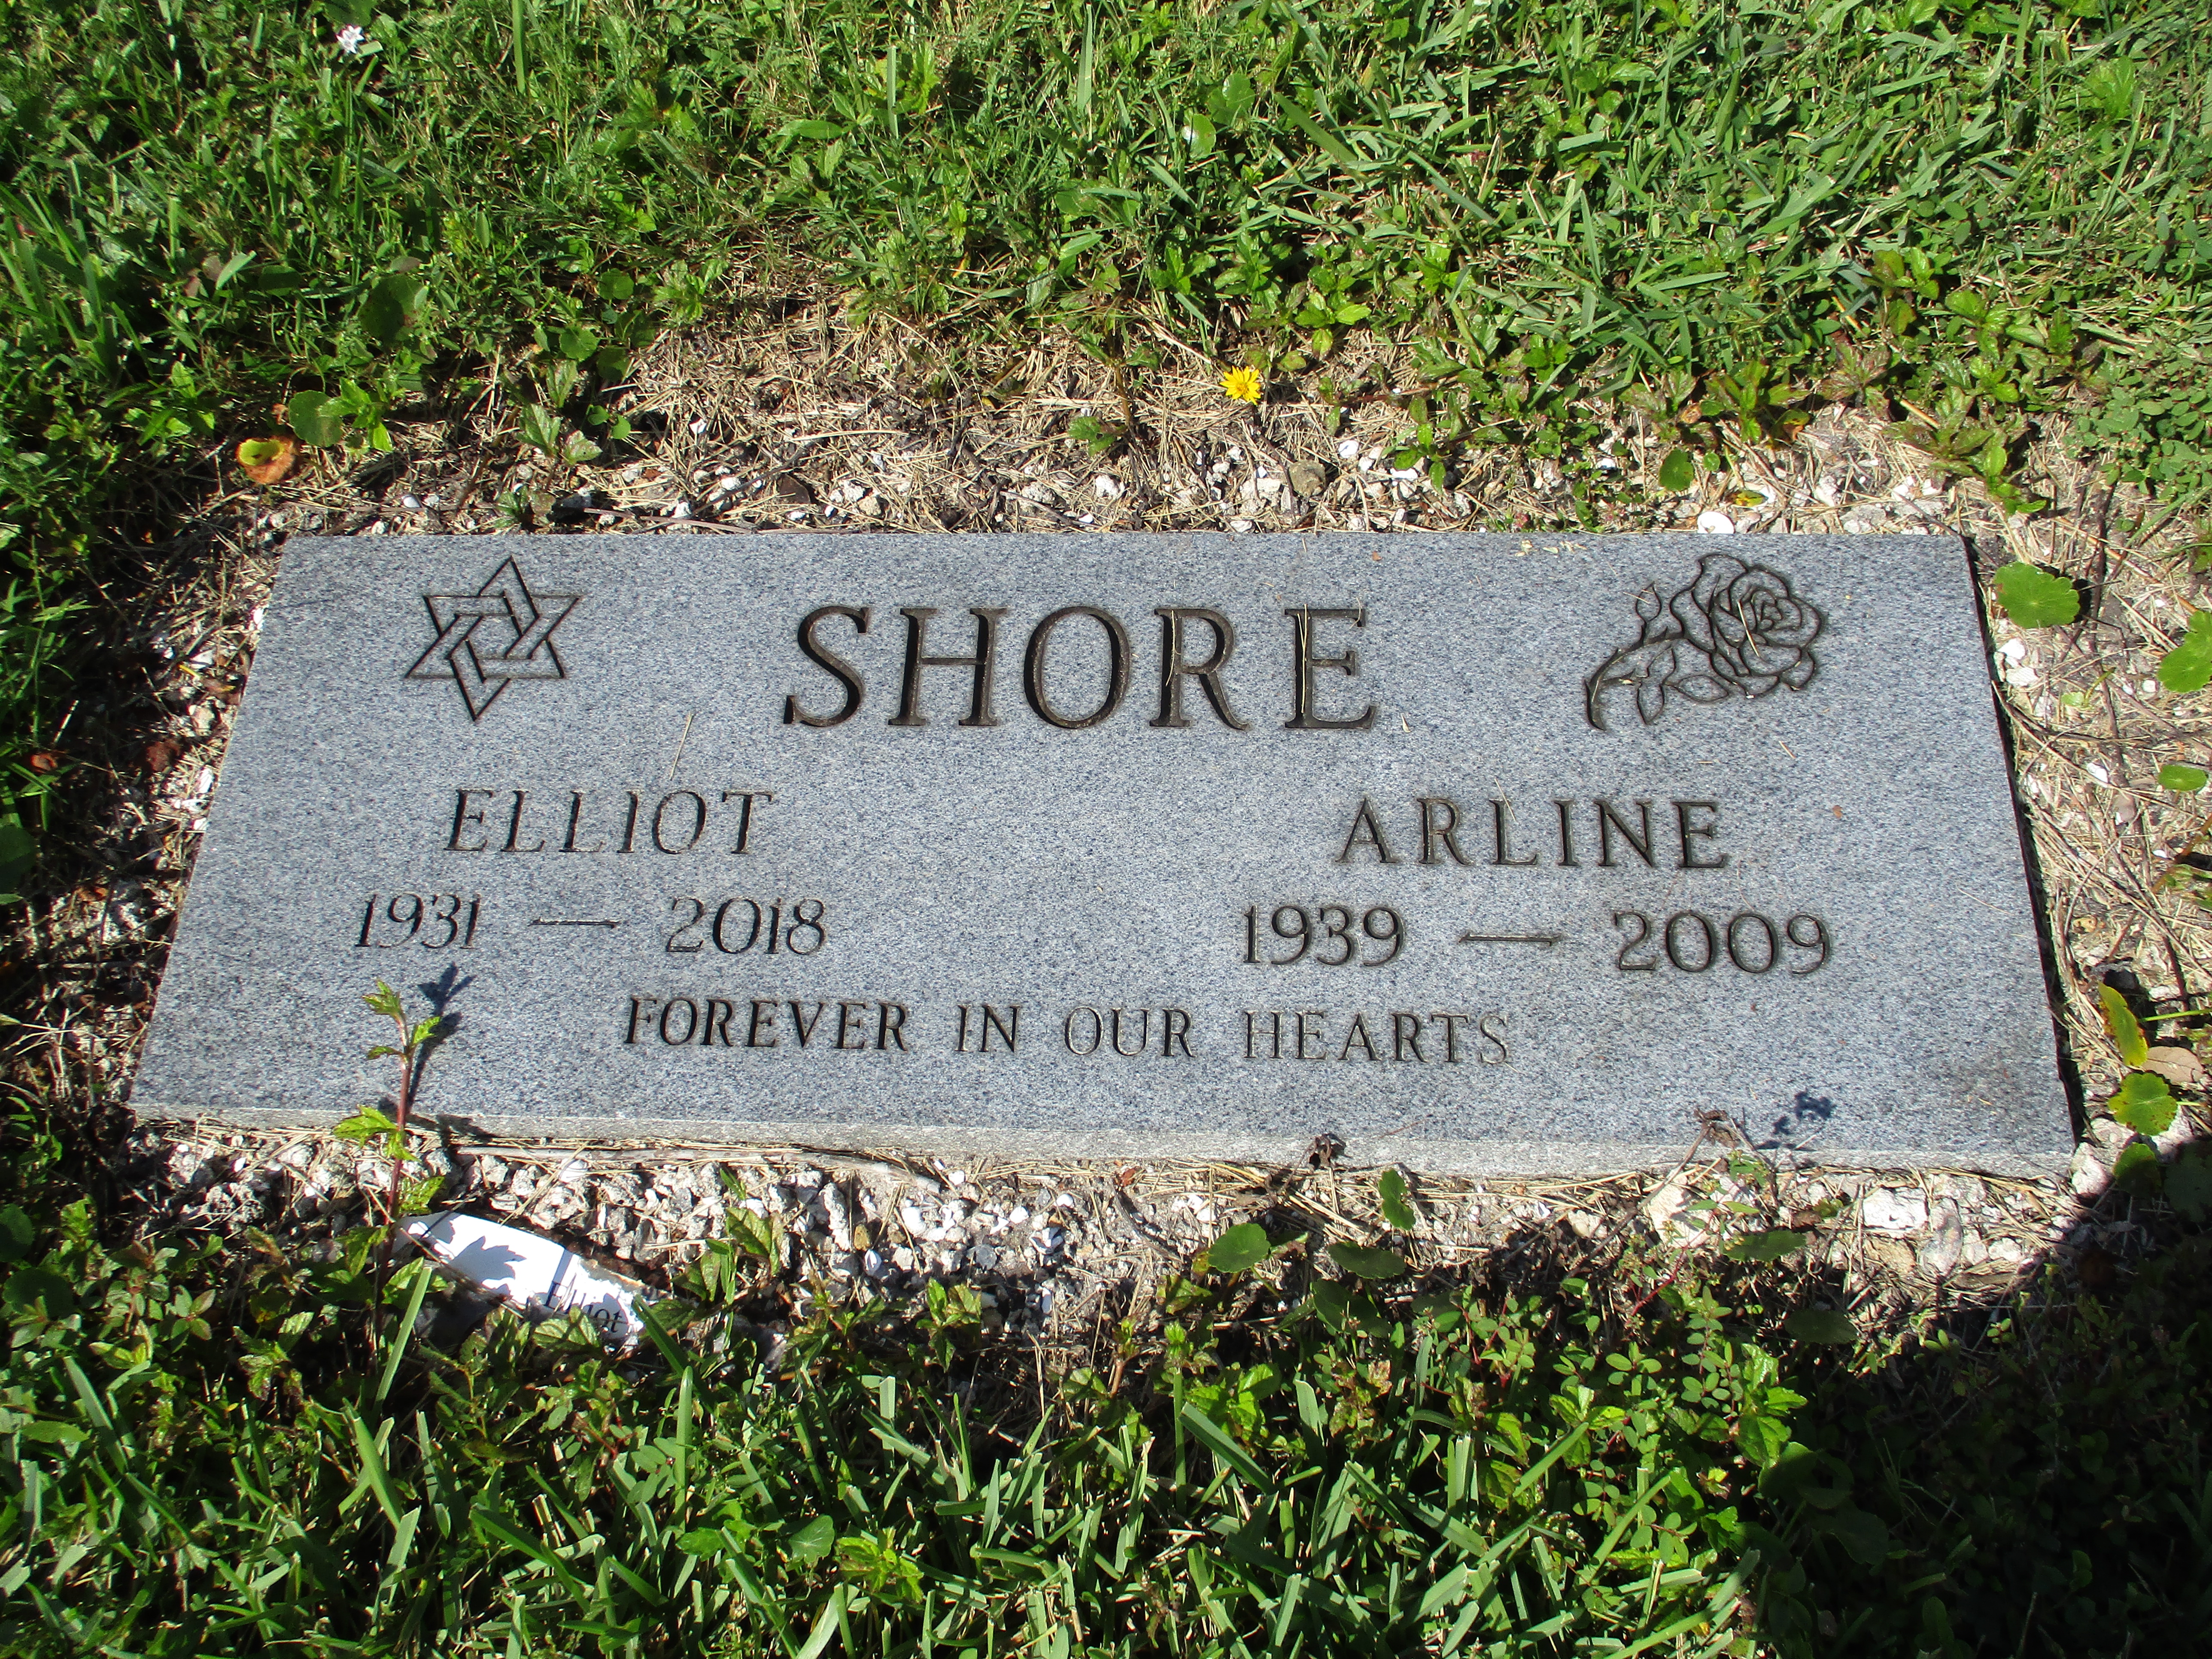 Elliot Shore